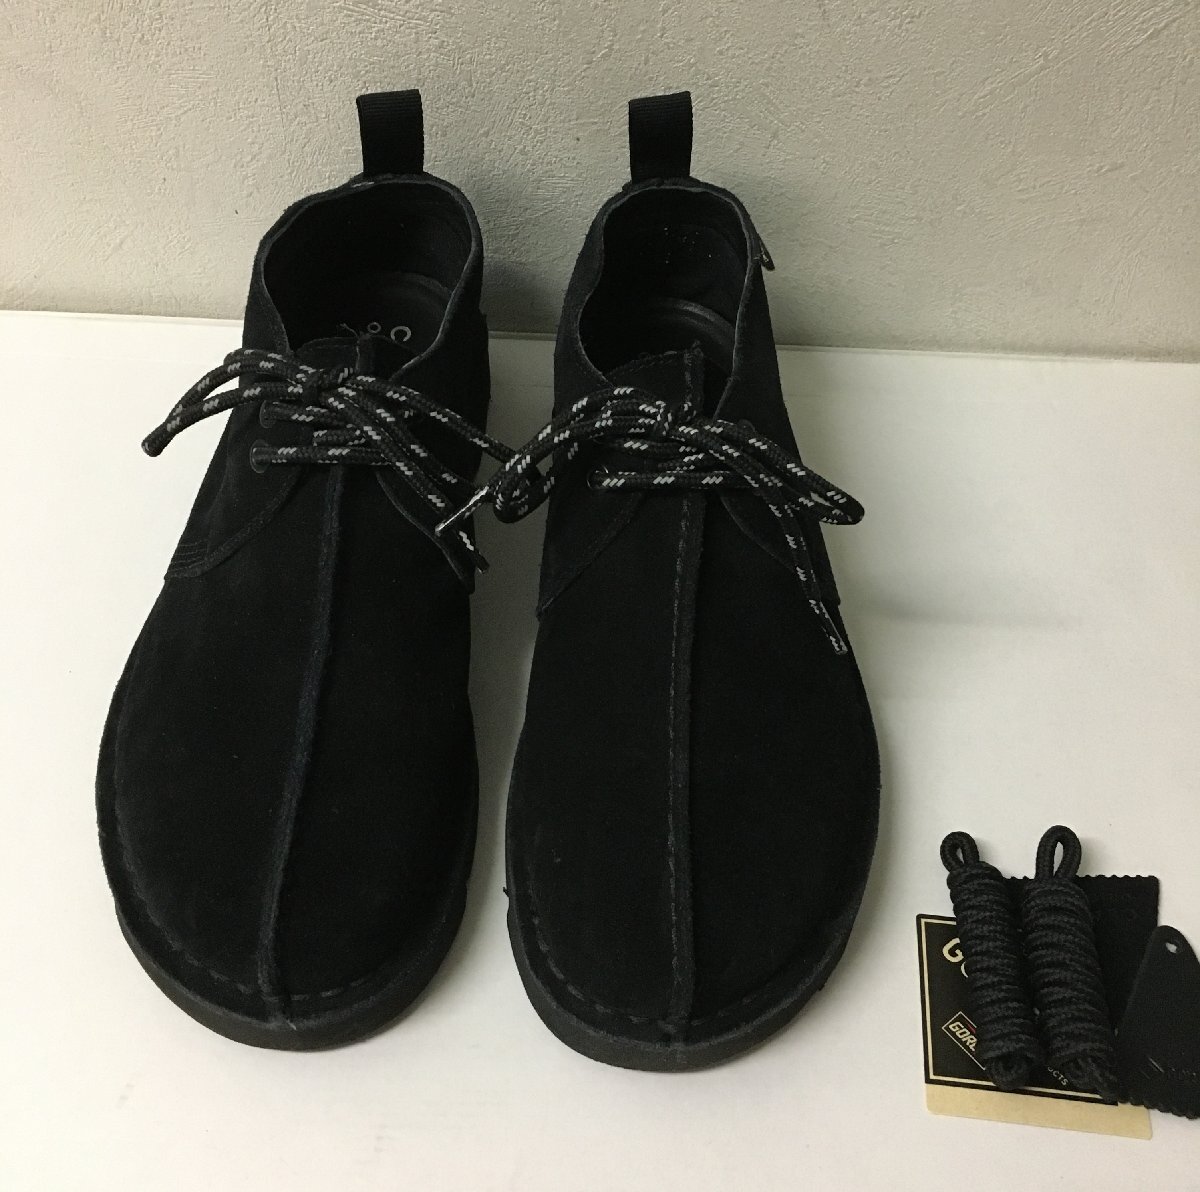 *CLARKS Clarks Desert Trek GTX замша обувь прекрасный товар чёрный размер UK7.5 26cm передний и задний (до и после) коробка с биркой 